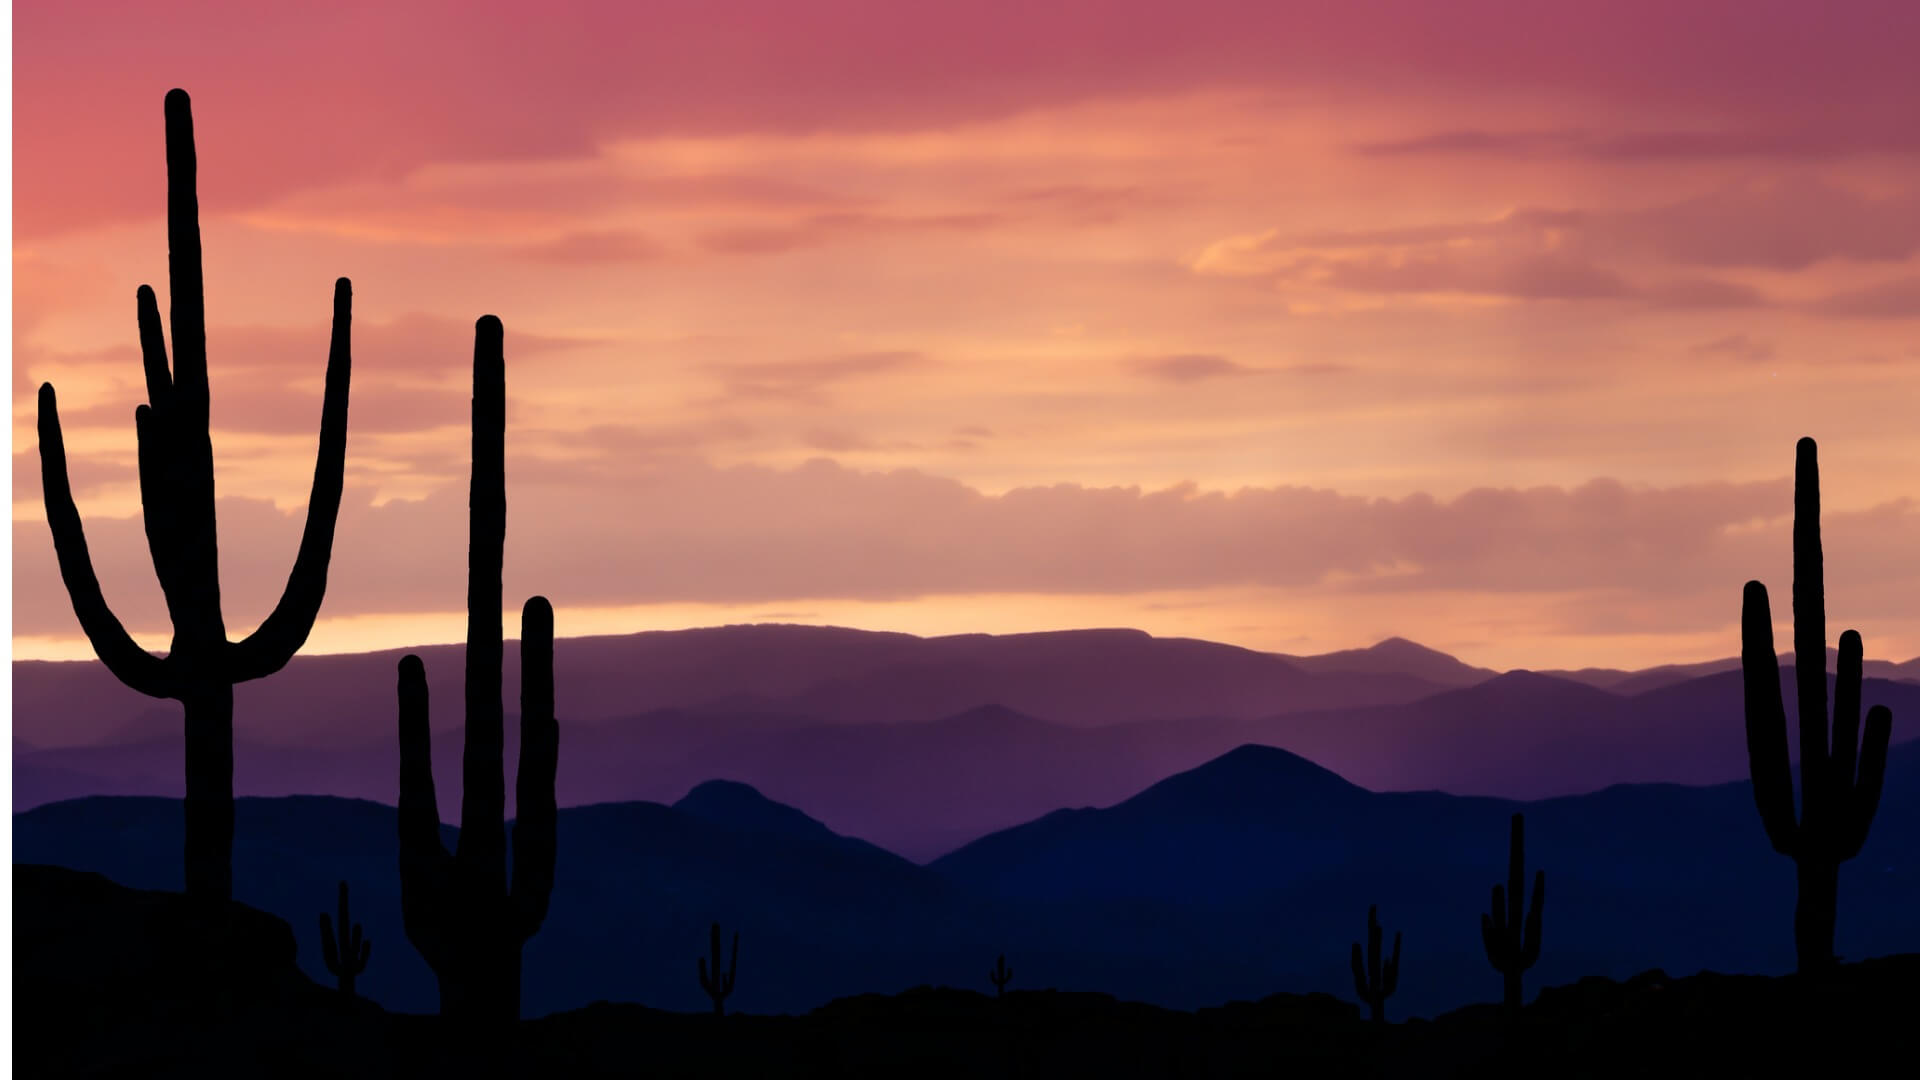 Southwest Arizona desert during a sunset